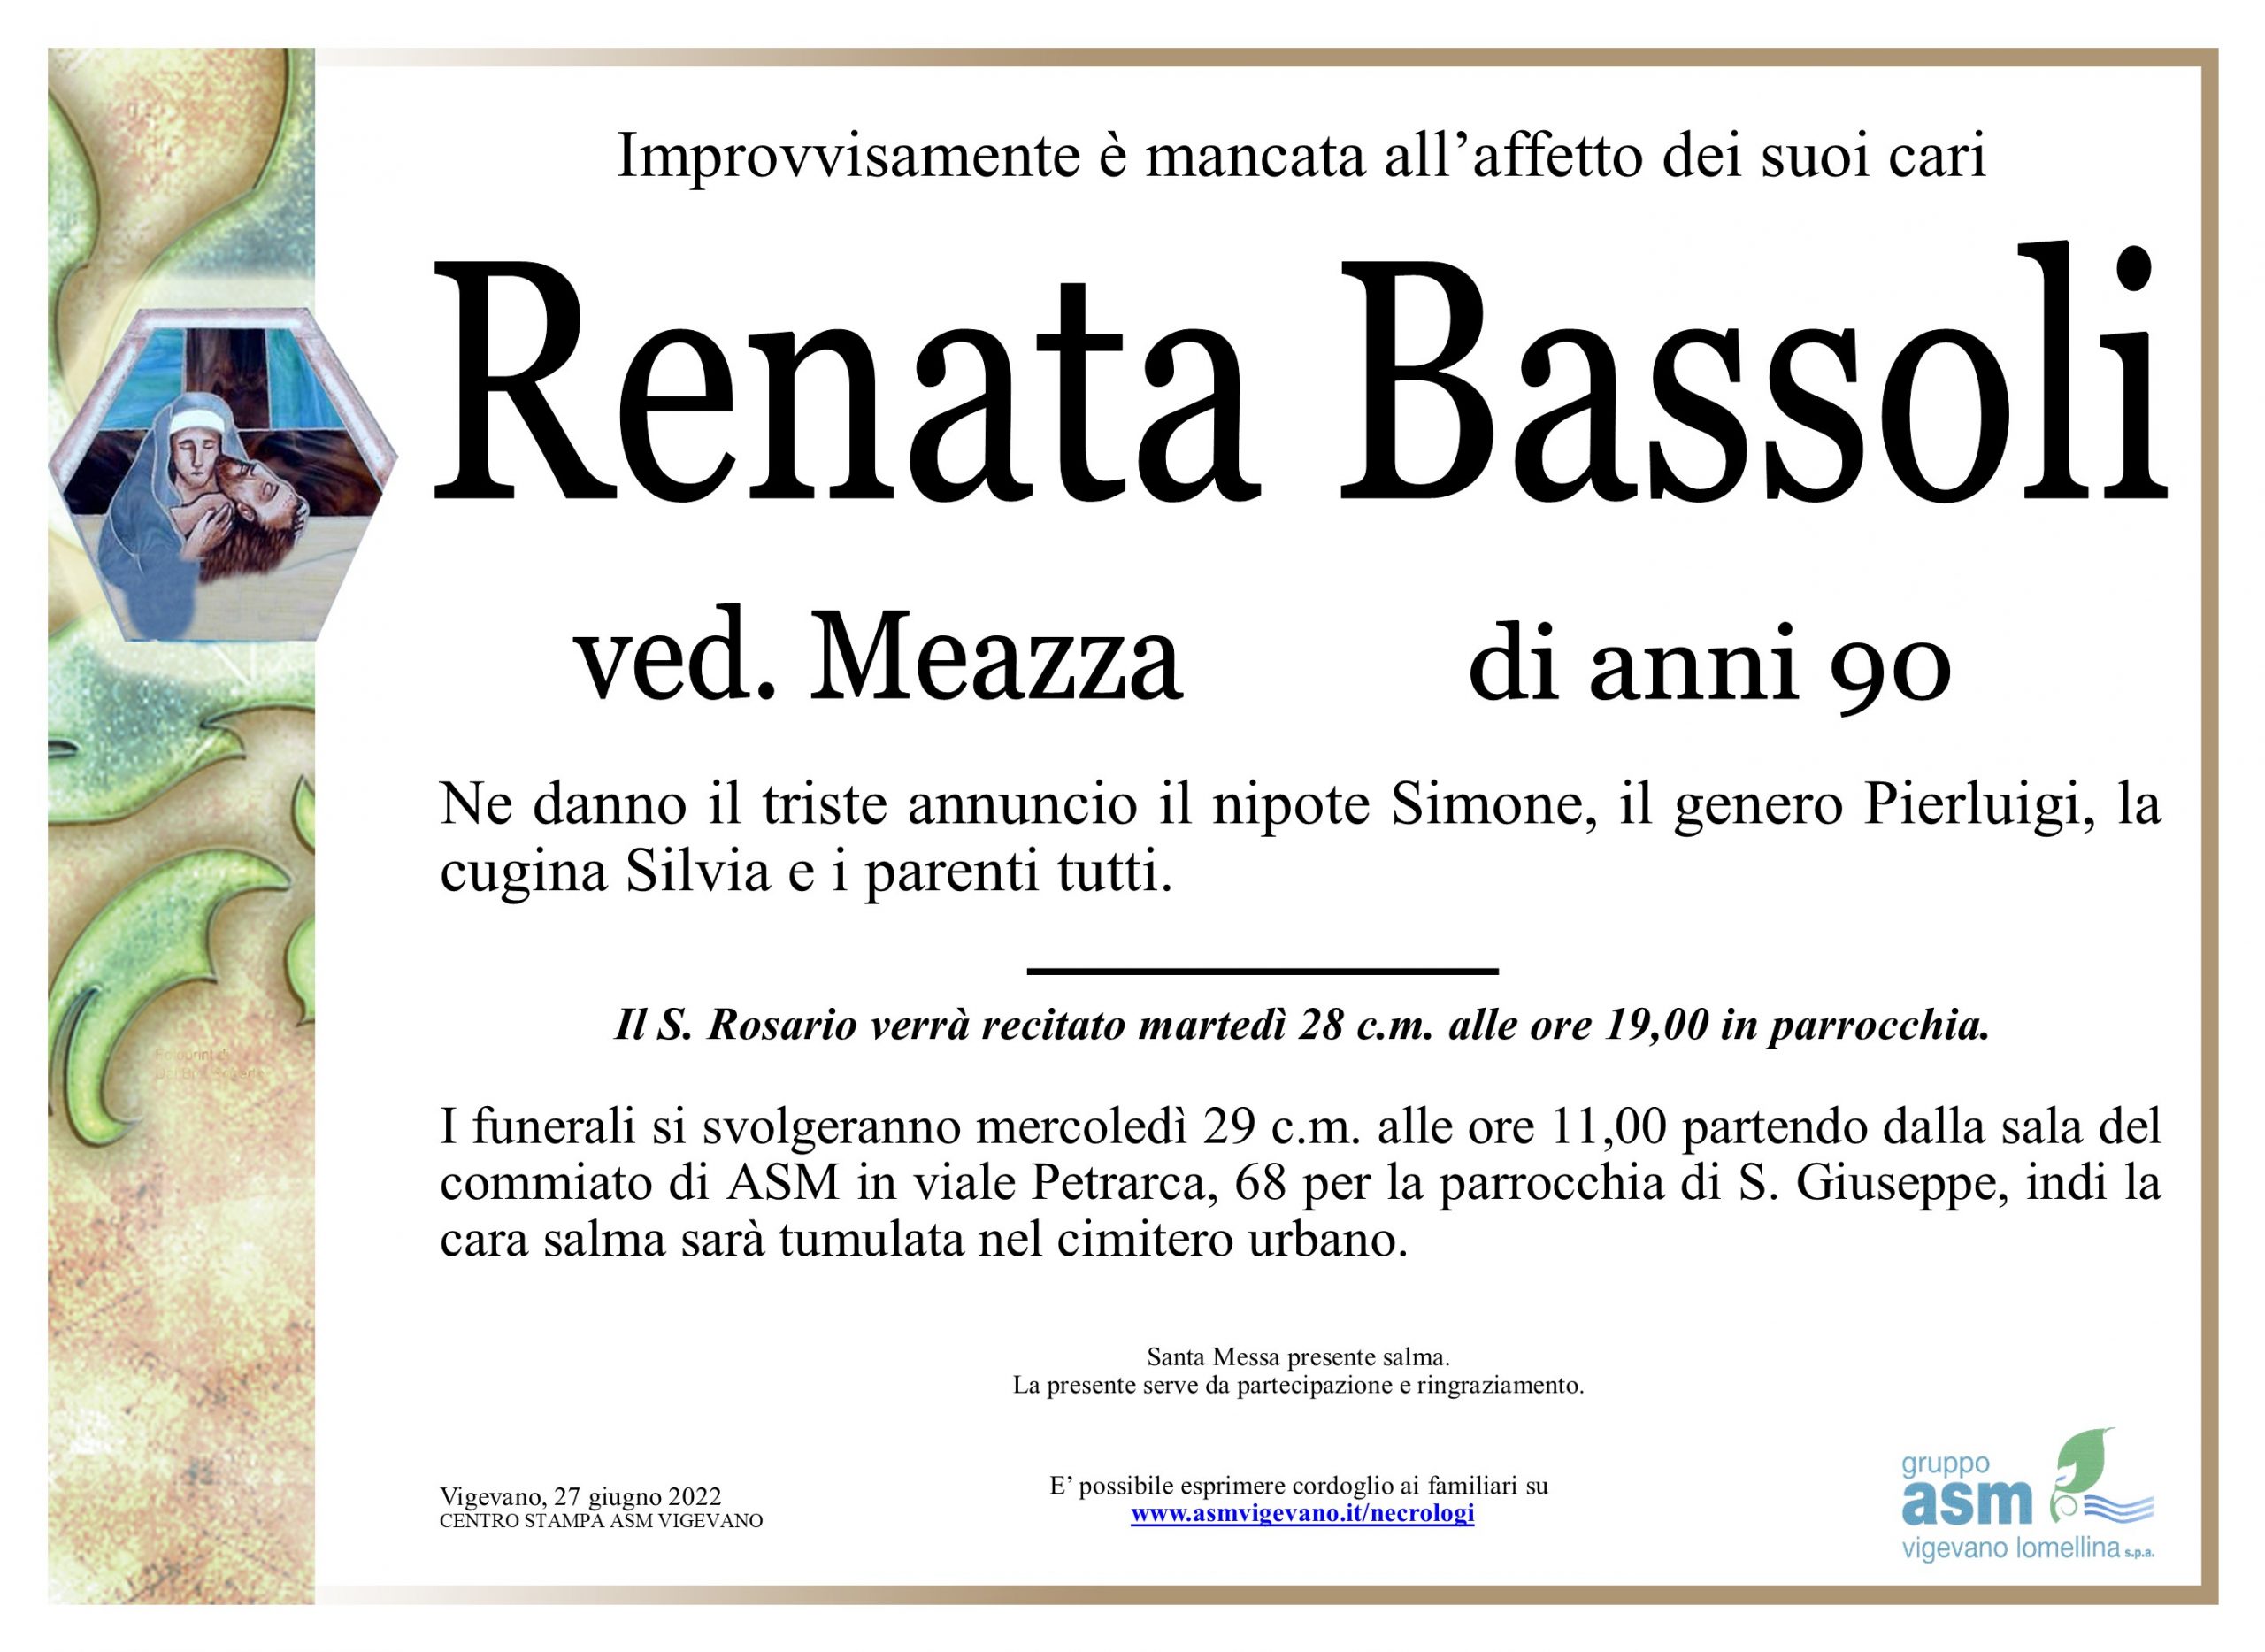 Renata Bassoli